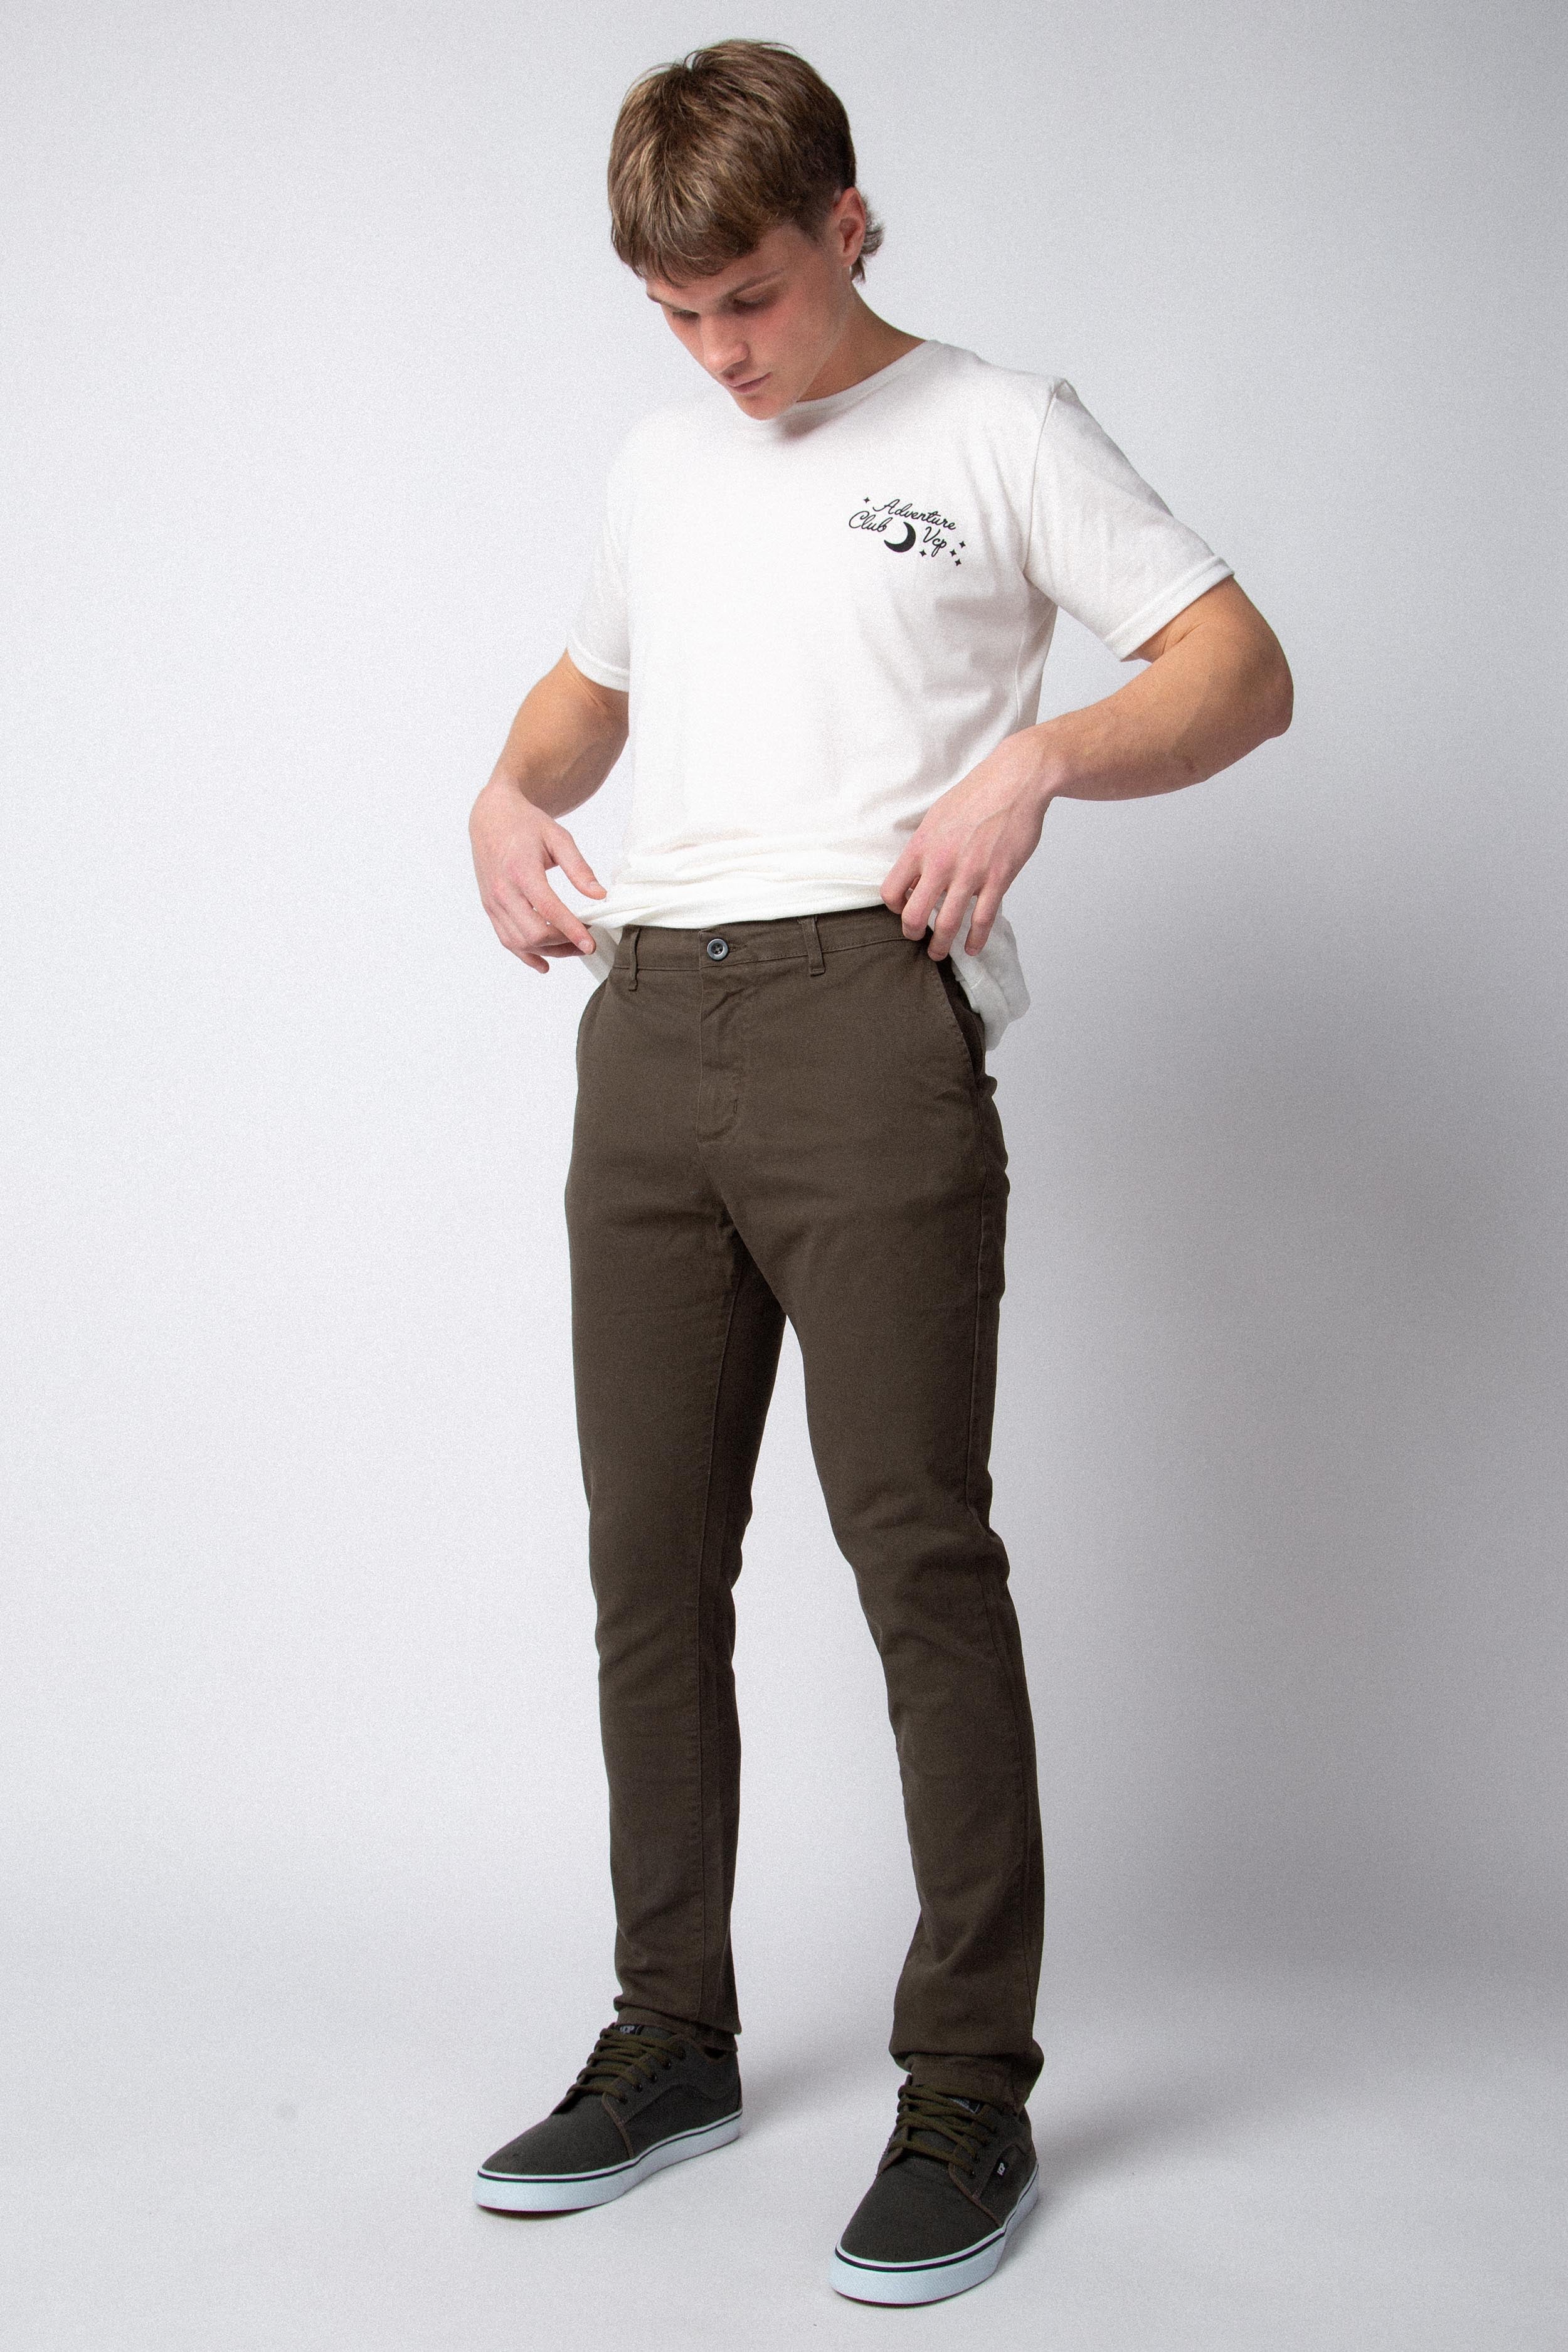 Pantalon Chino Royal Militar